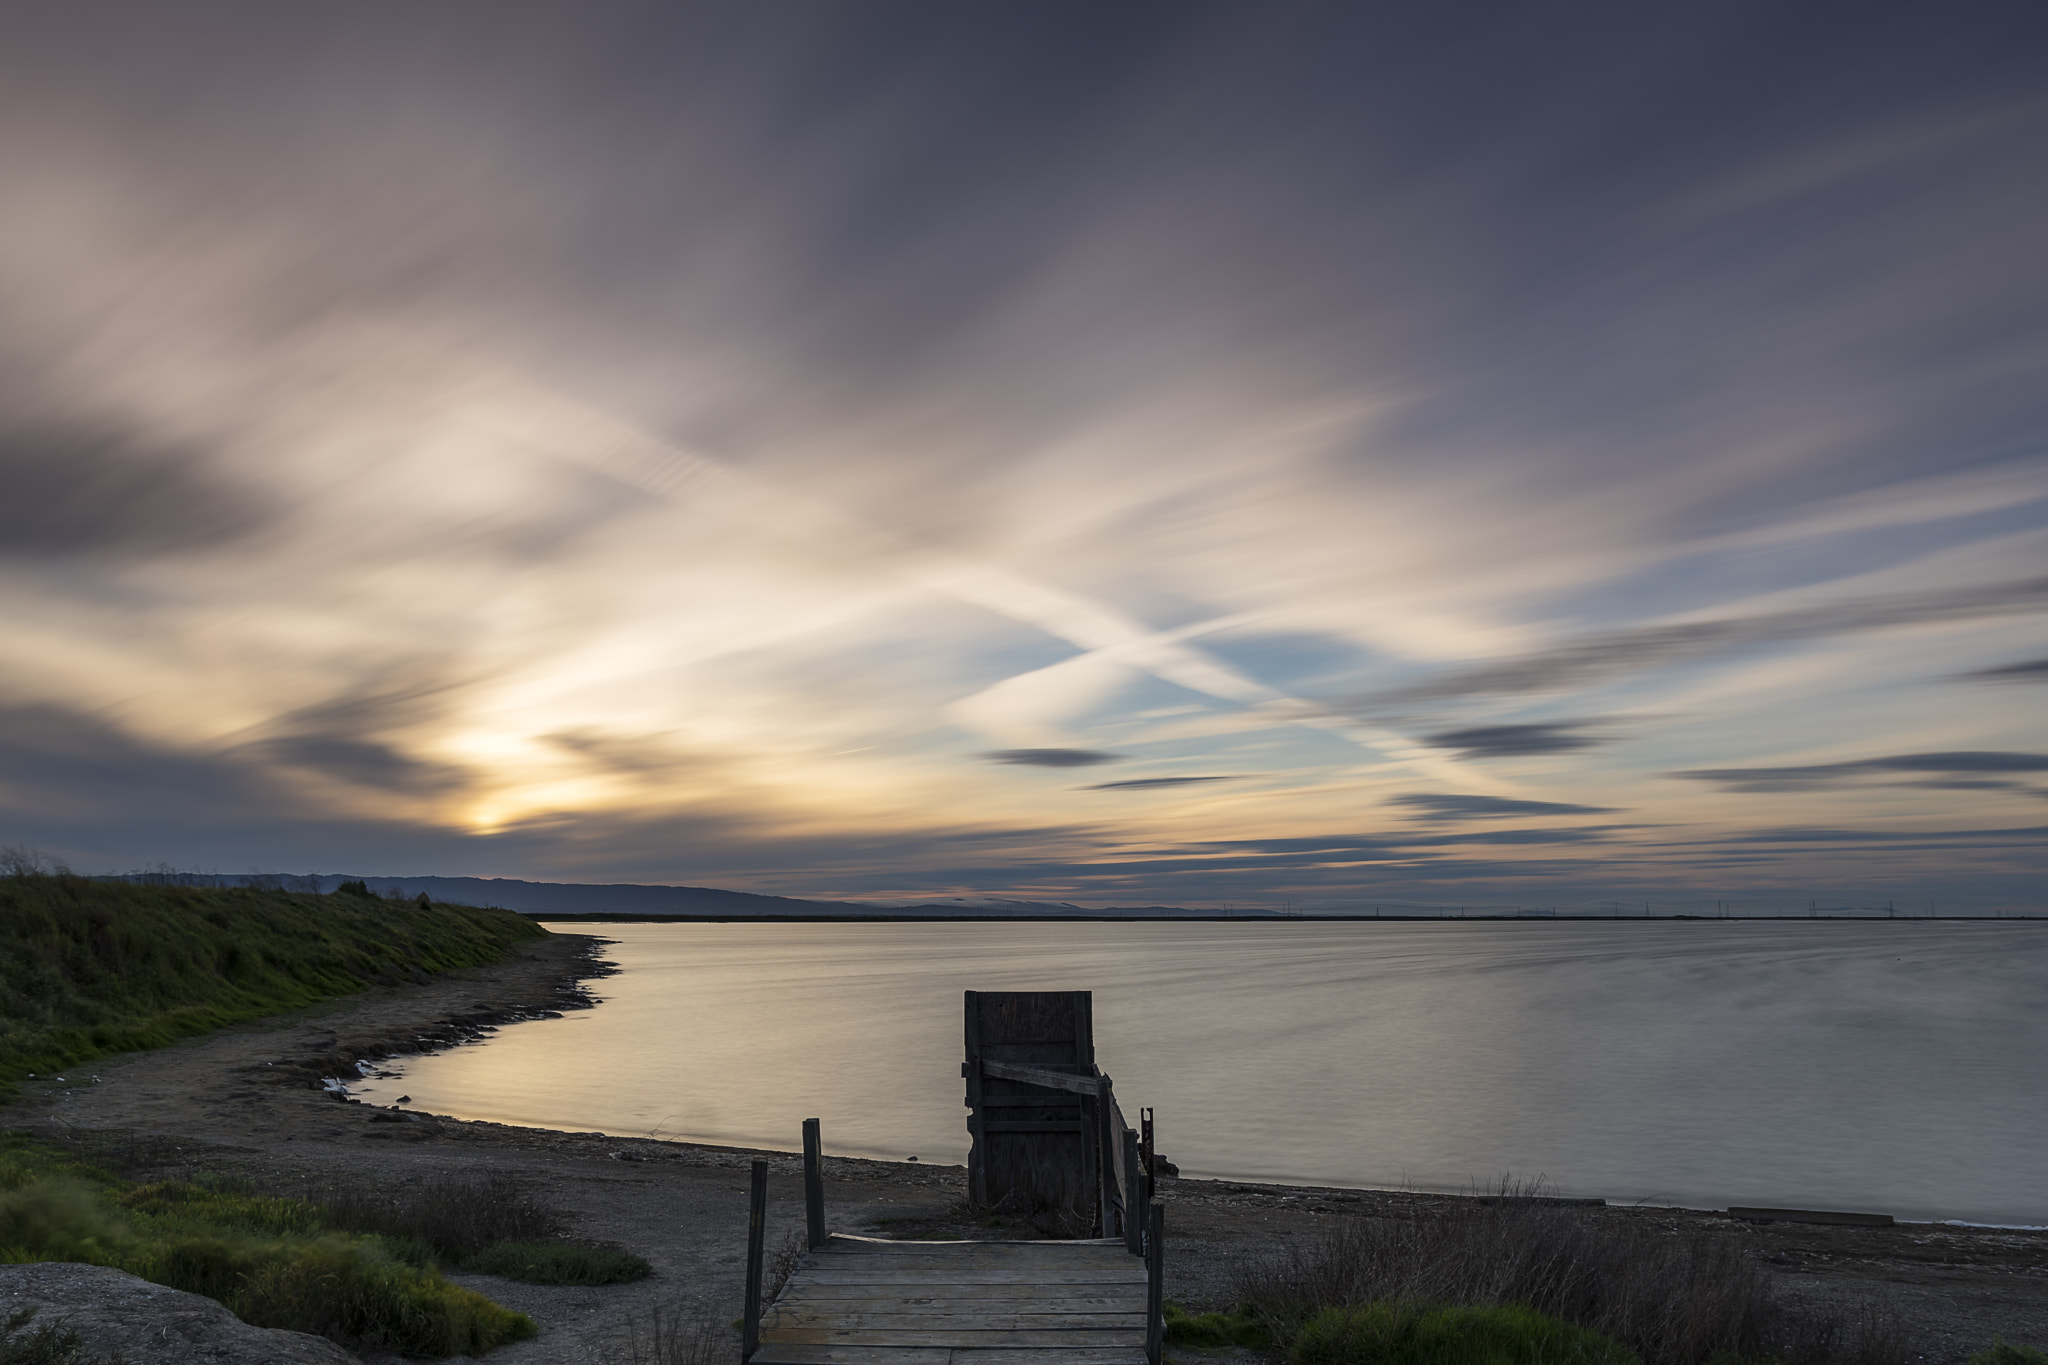 Sony a6300 sample photo. Alviso marina county park sunset photography